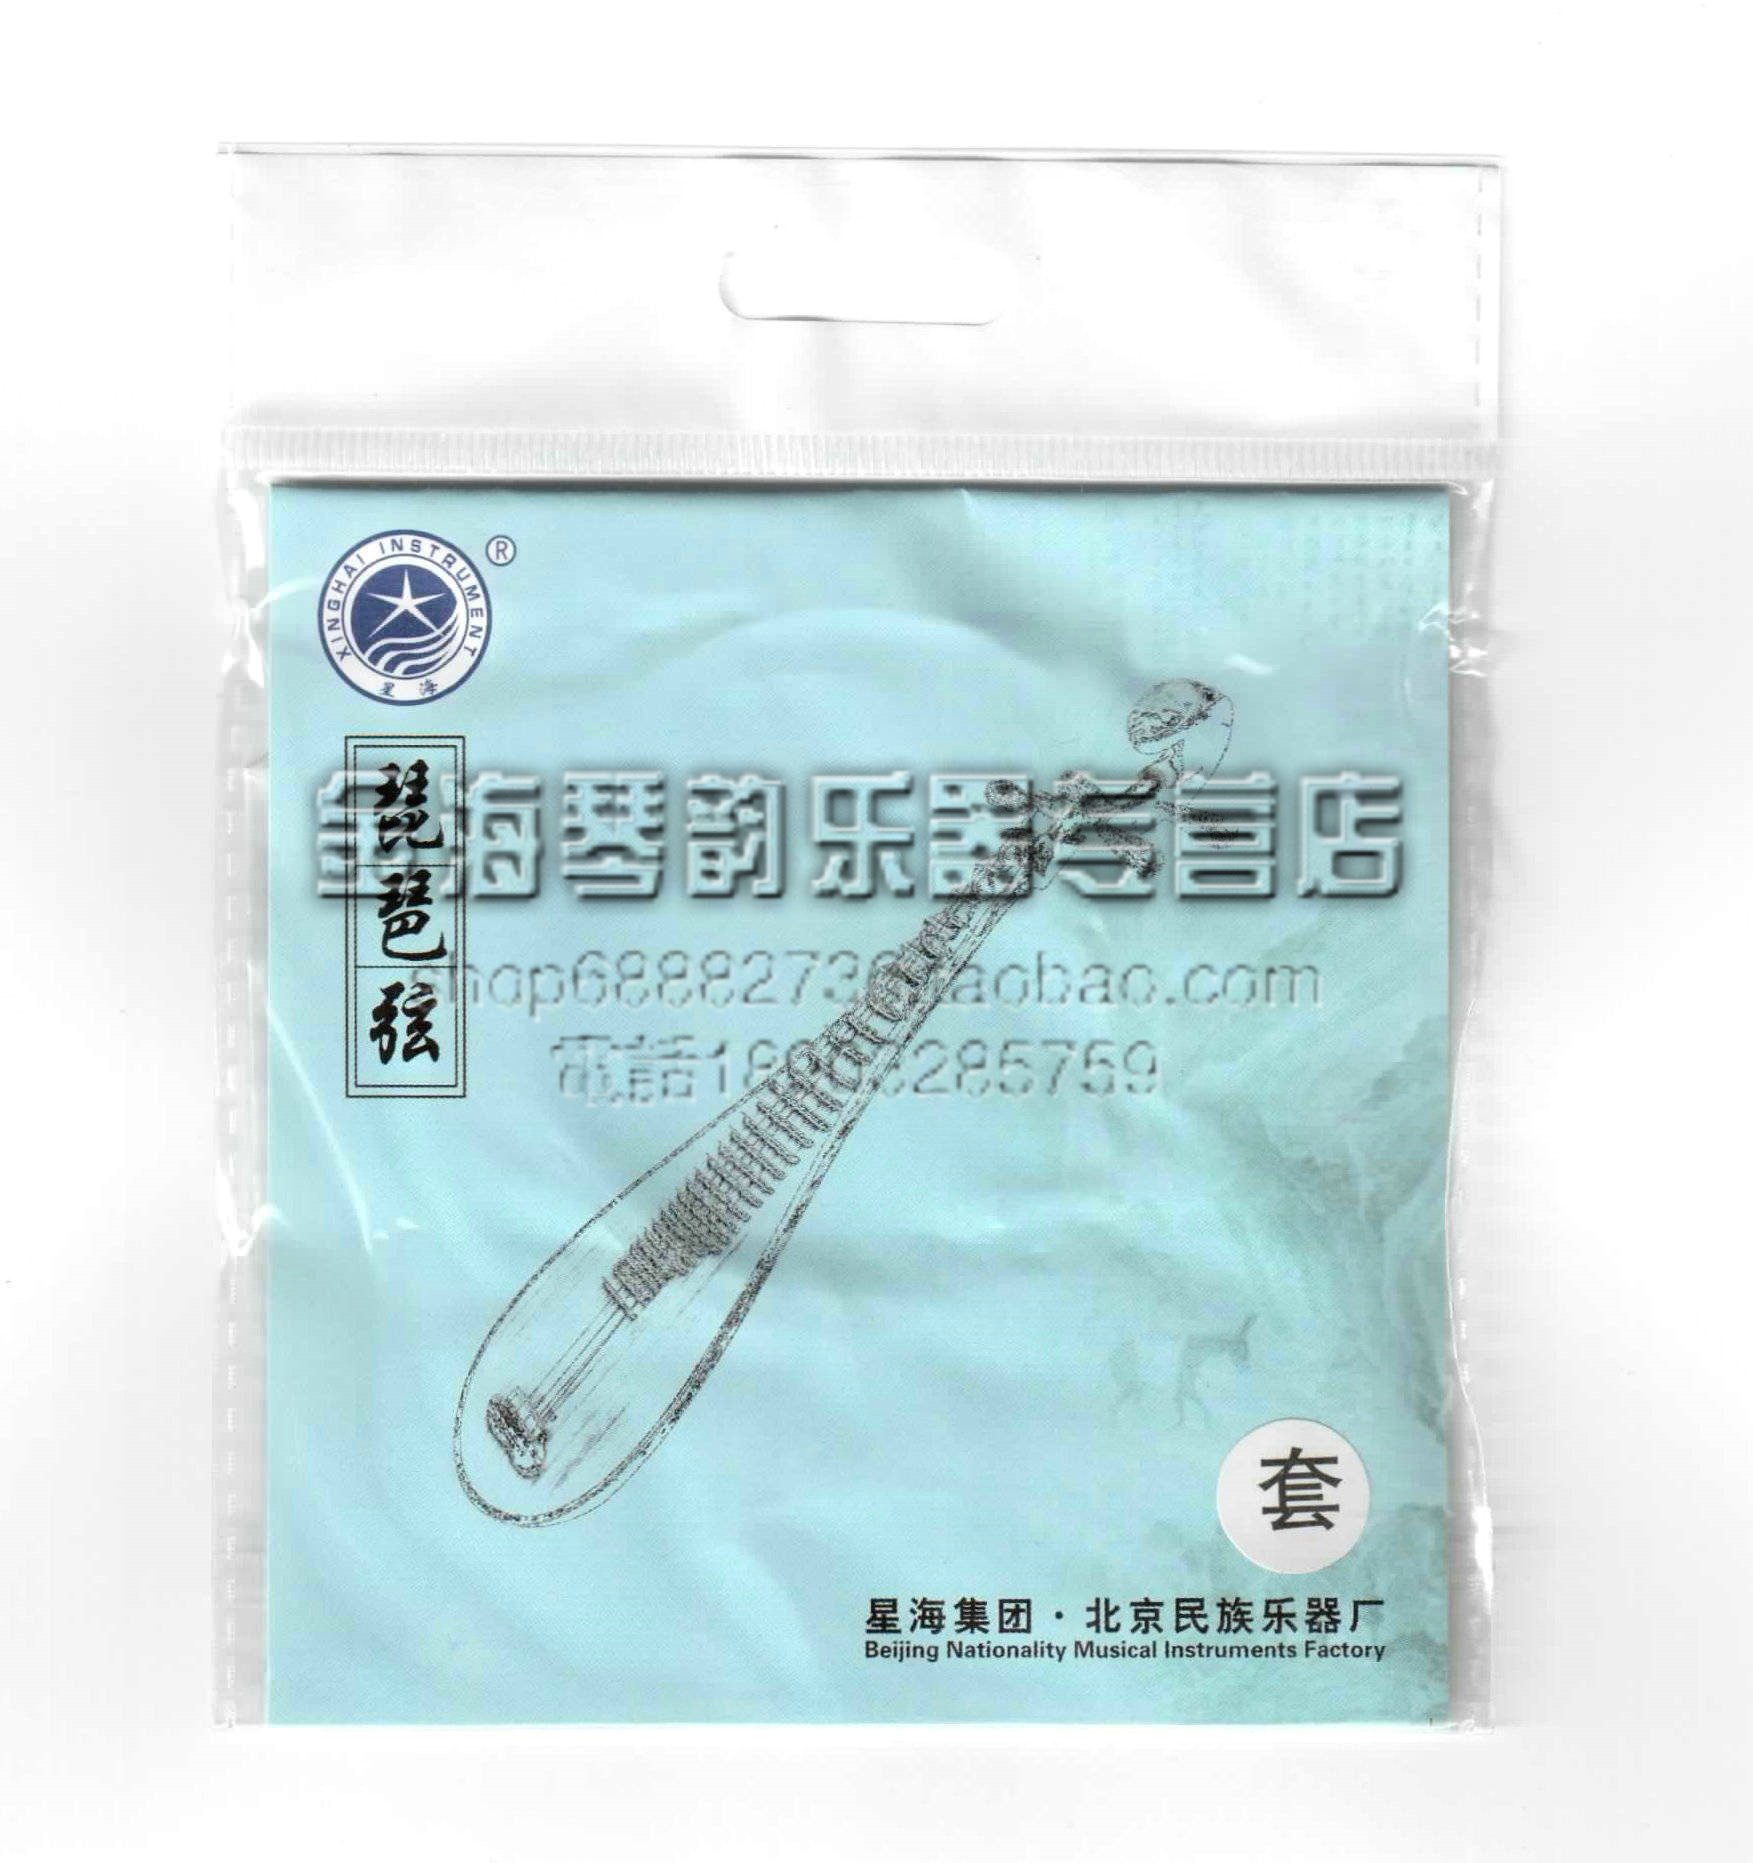 北京星海乐器配件星海牌成人琵琶弦套装正品厂家直销